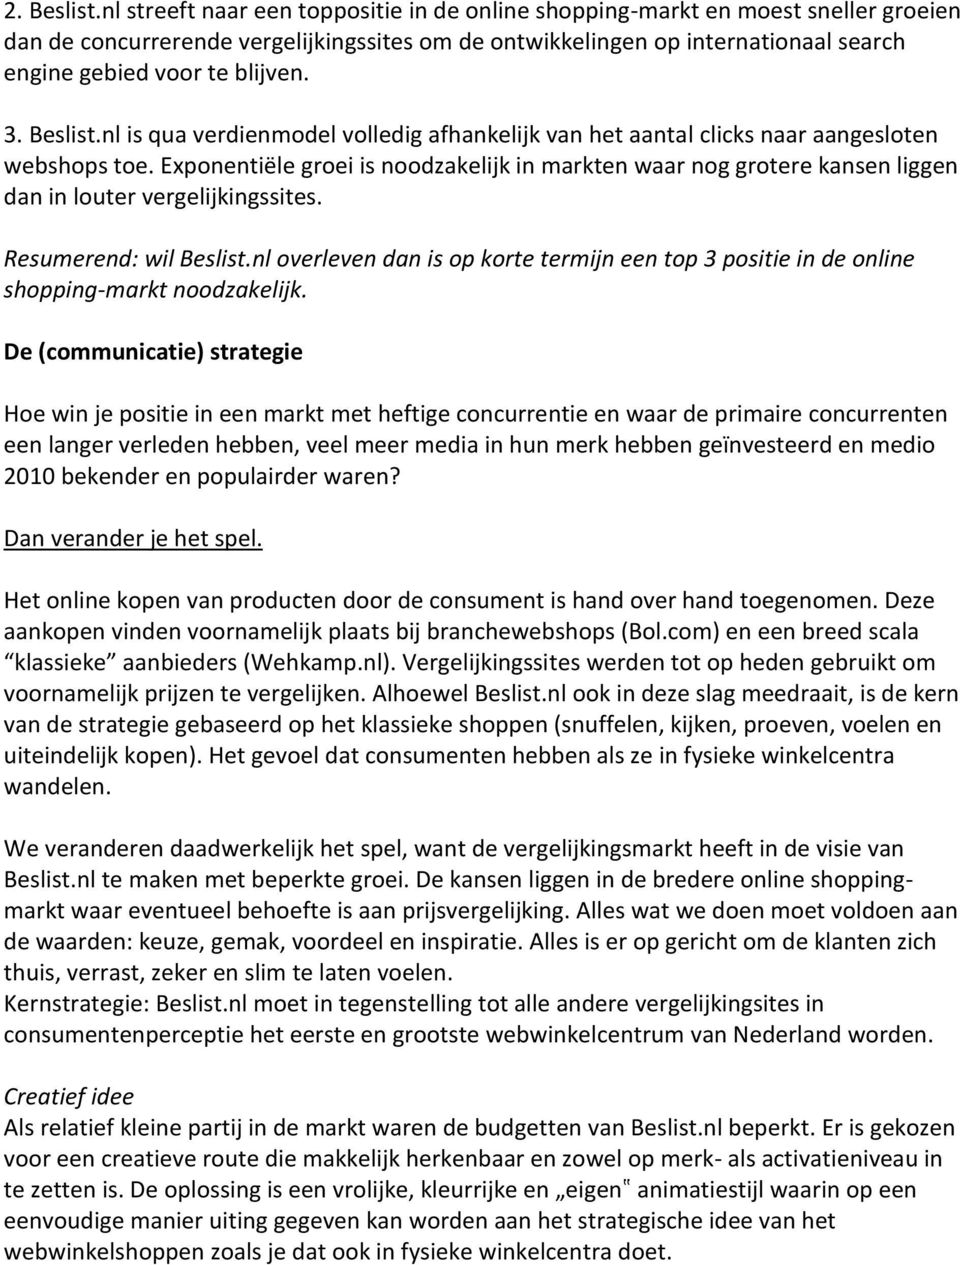 3. Beslist.nl is qua verdienmodel volledig afhankelijk van het aantal clicks naar aangesloten webshops toe.